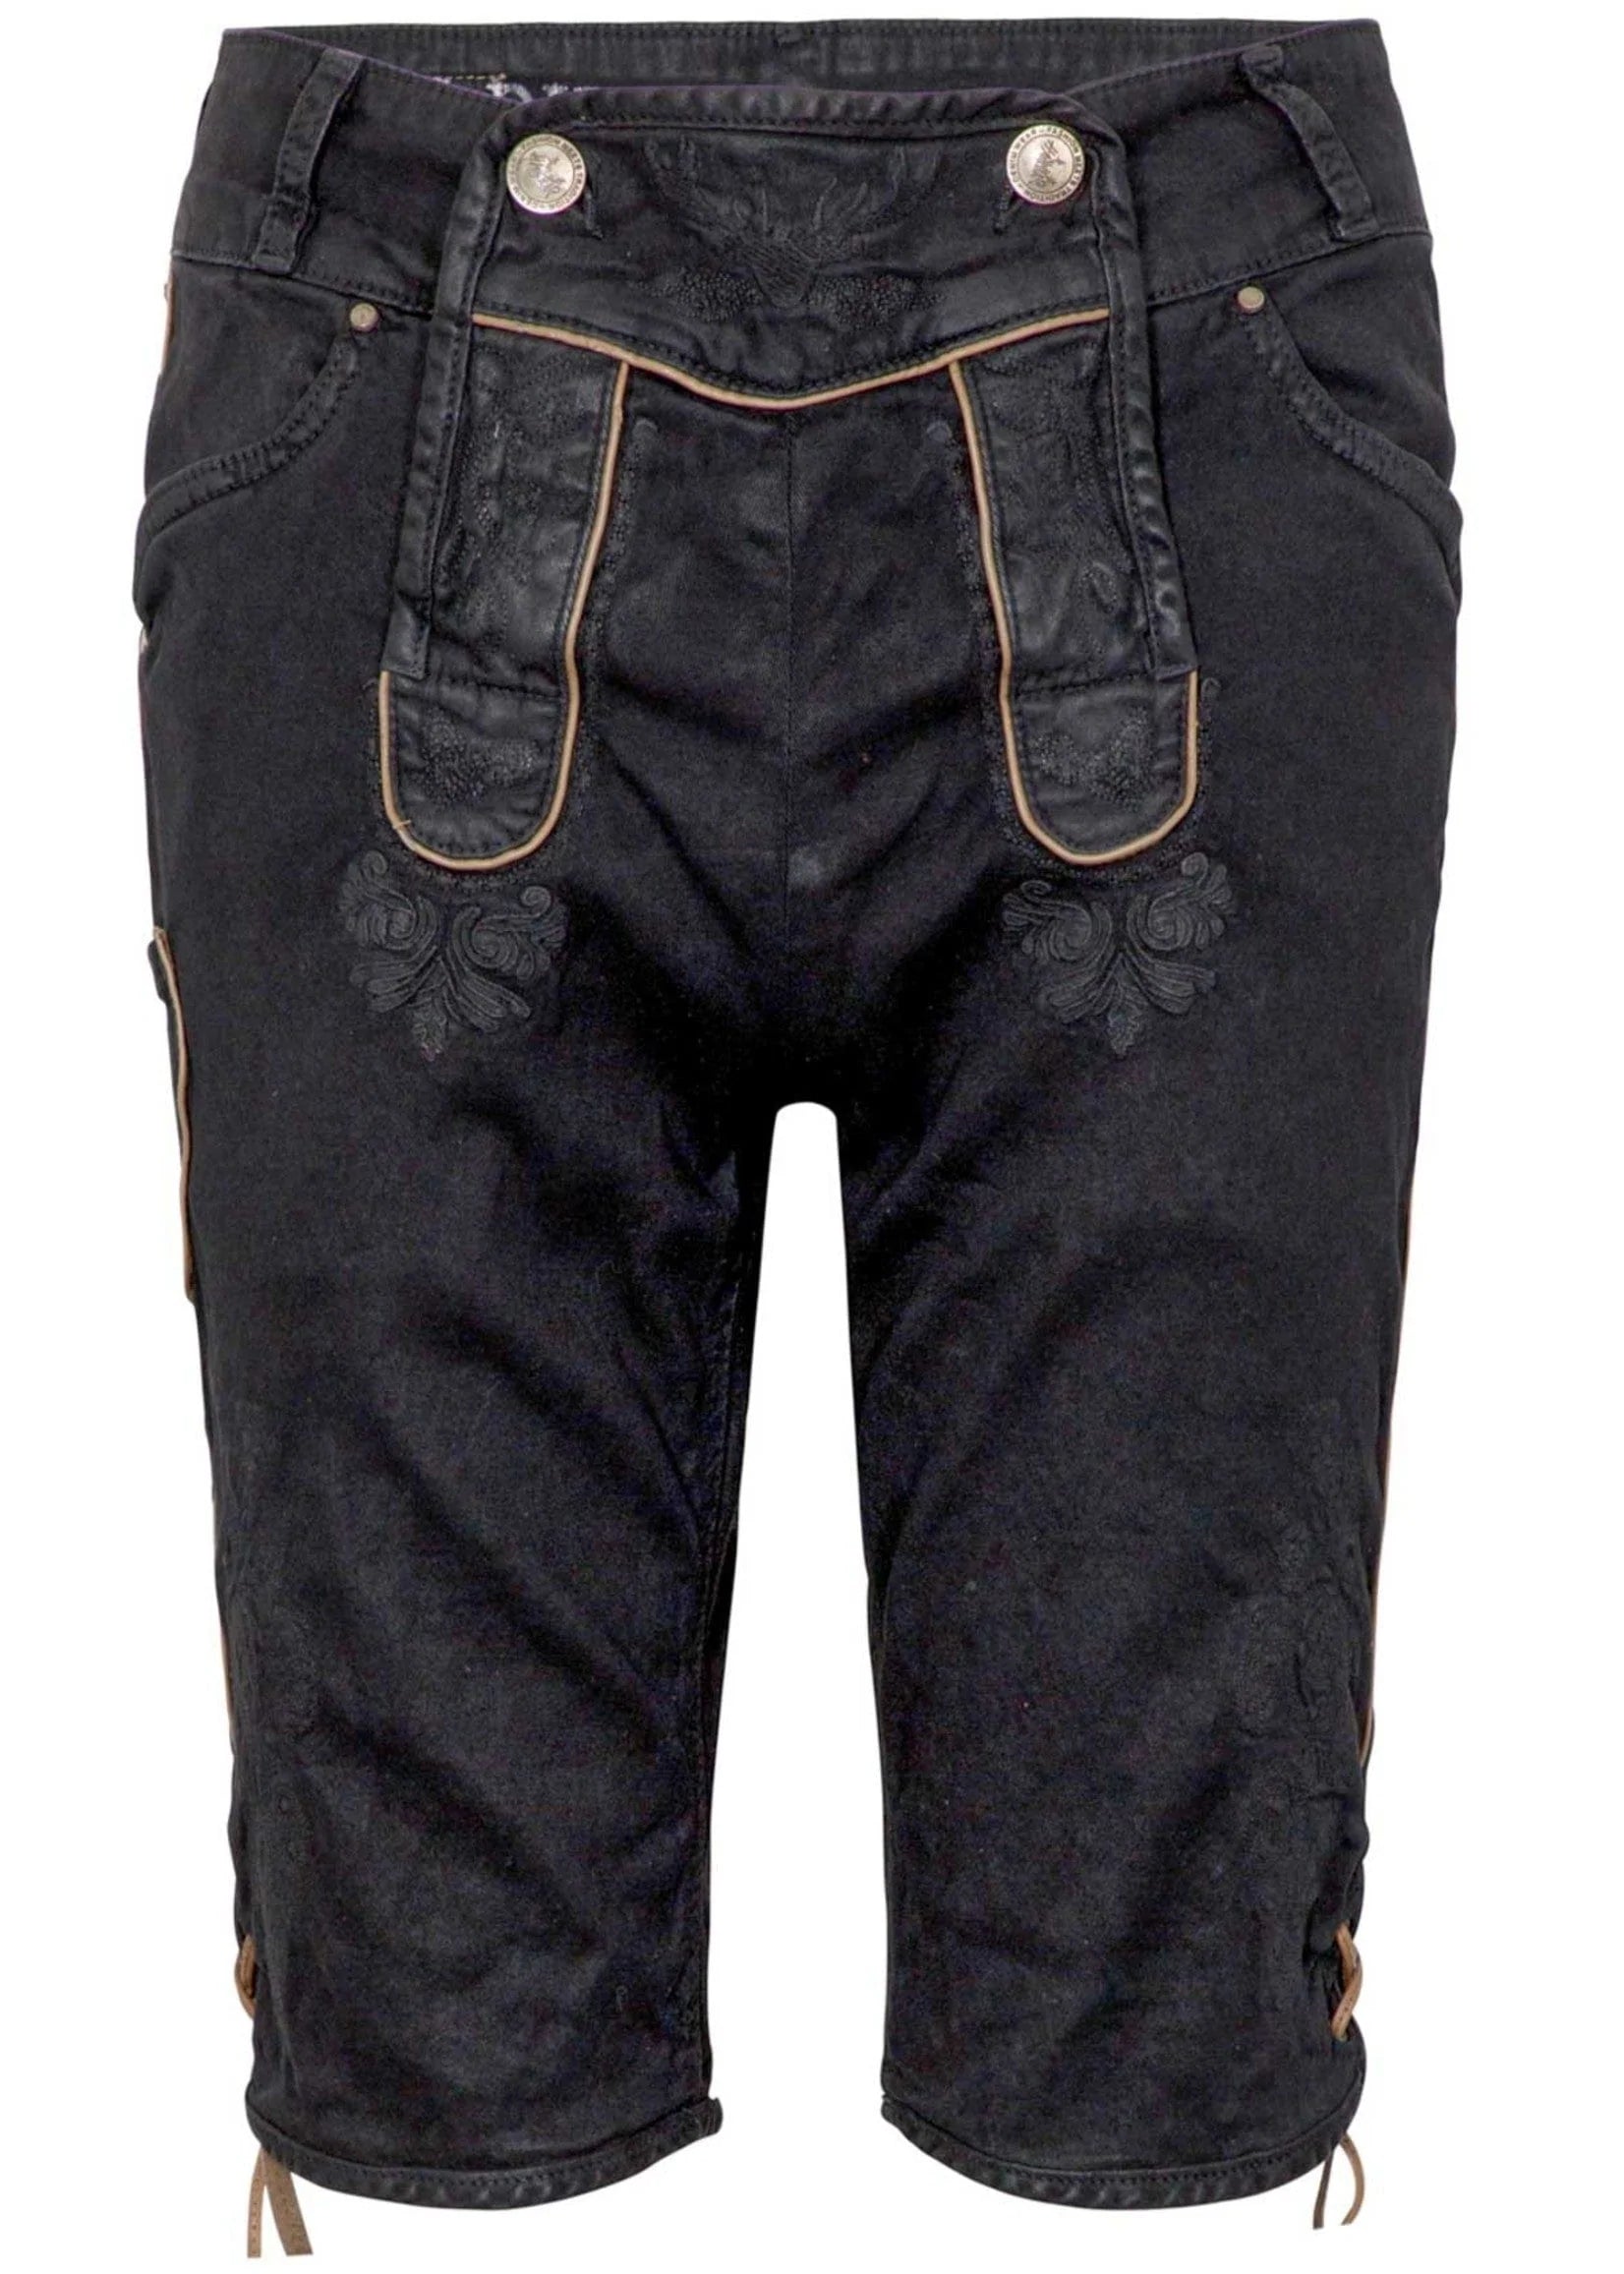 Hangowear Short jeans pants, black